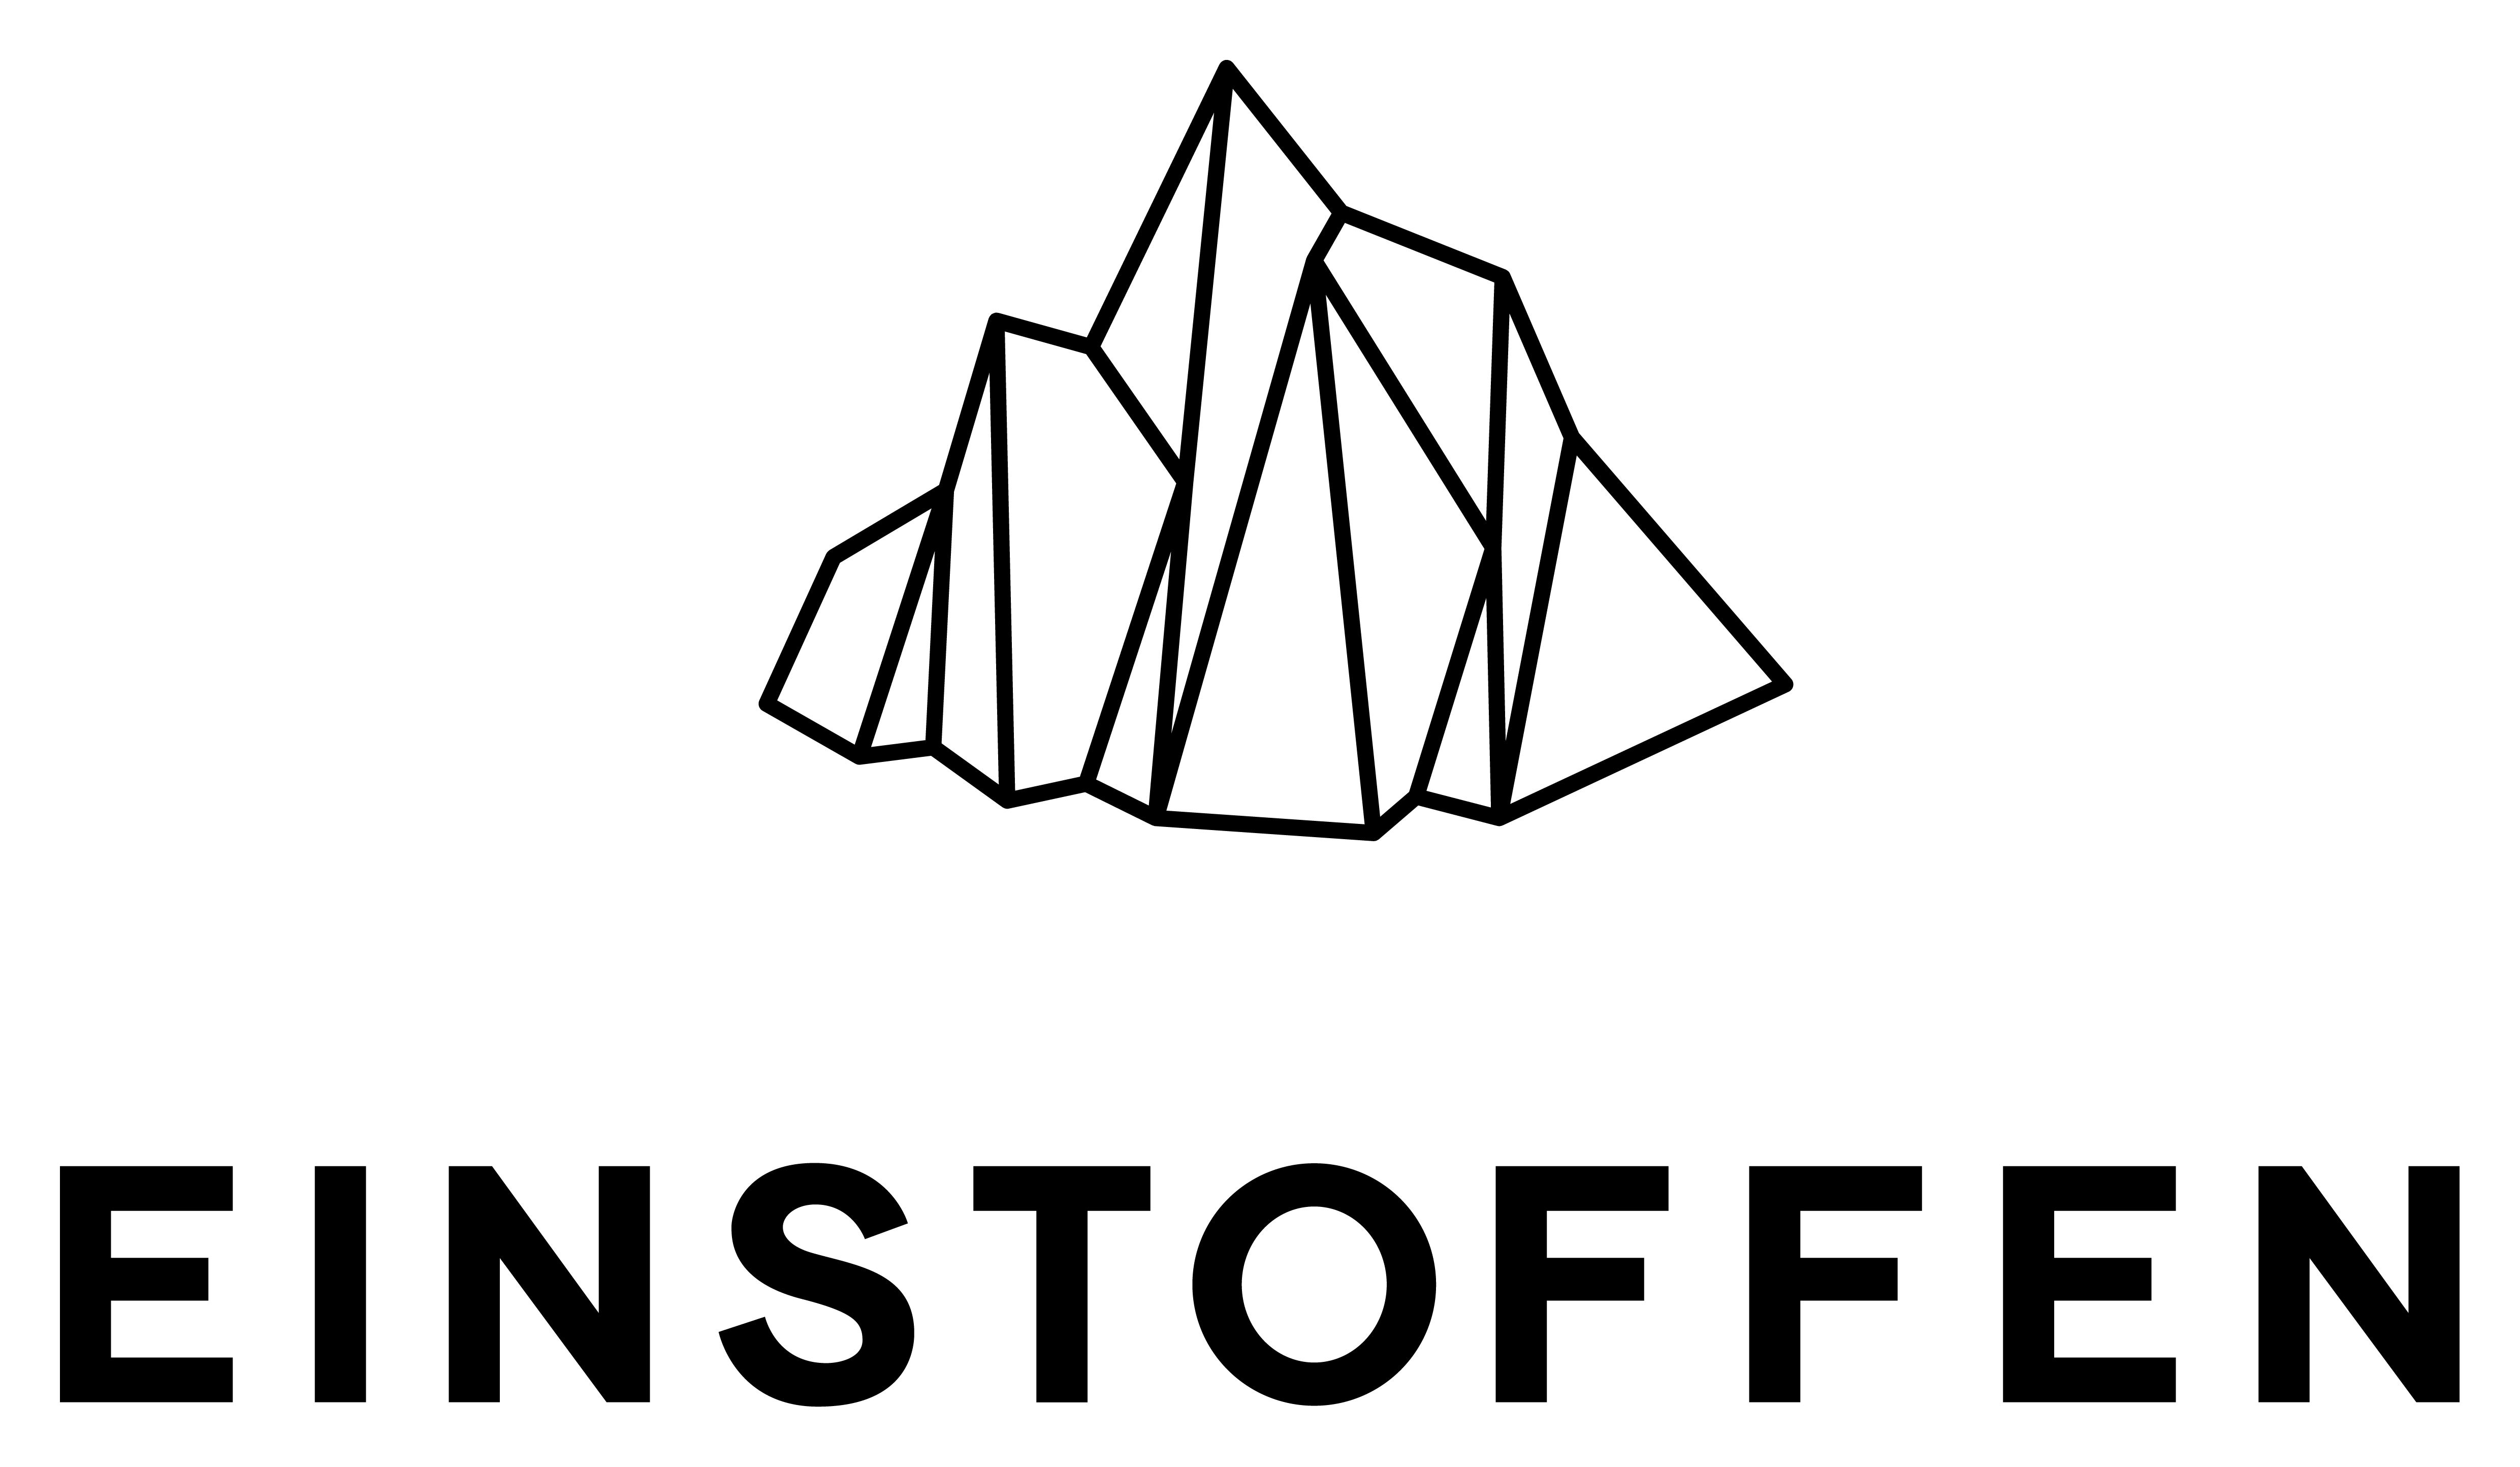 Logo Einstoffen